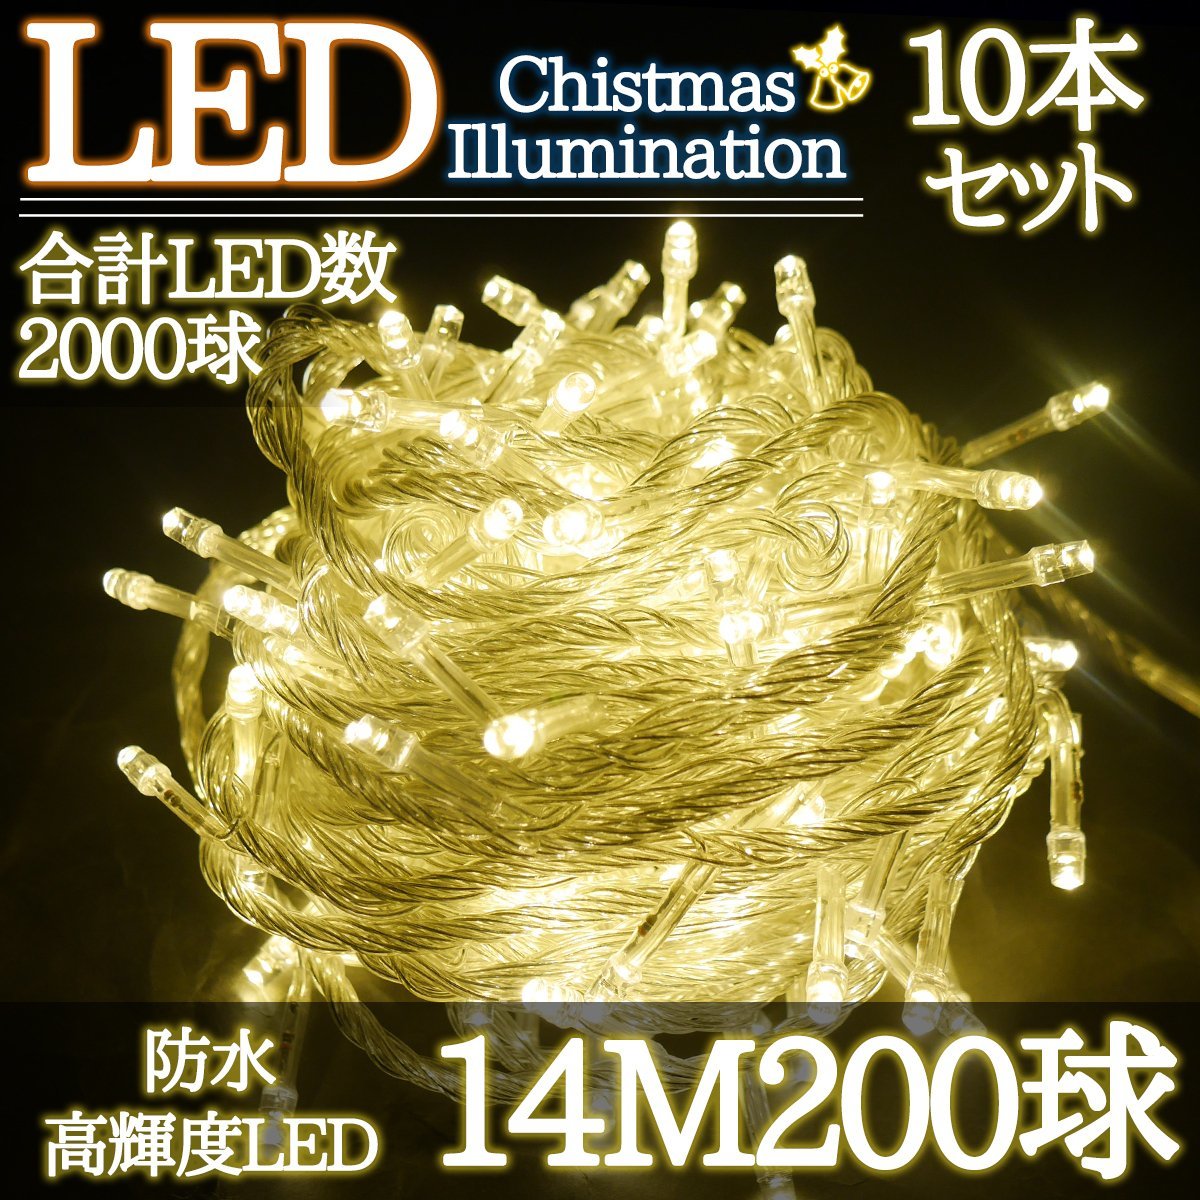 LEDイルミネーション 14M LED200灯 クリスマス クリスマスライト つらら 電飾 屋外 ガーデン 庭 防水 連結可能 ゴールド 10箱同梱 KR-99